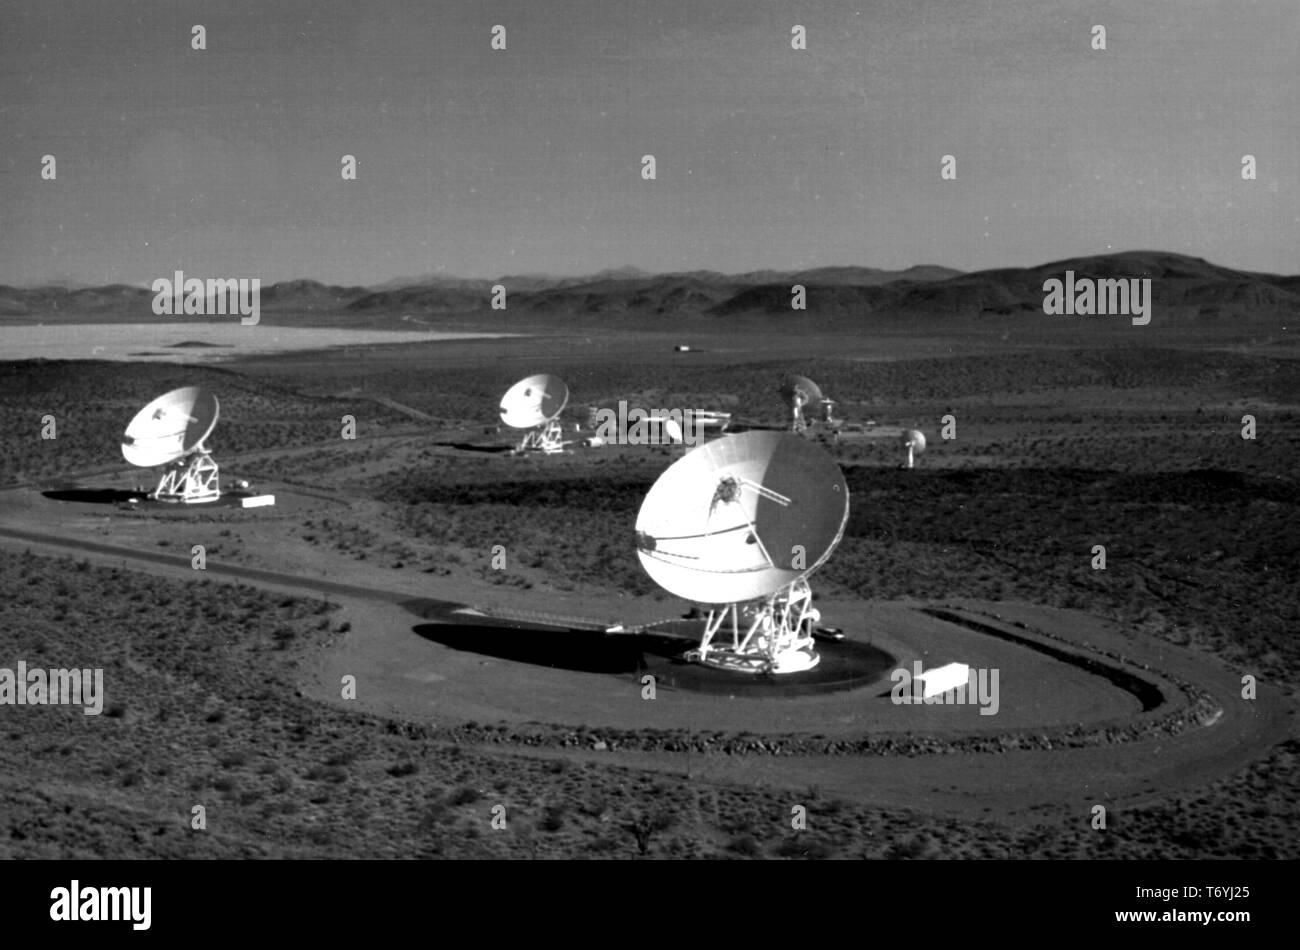 Photographie de la DSN (Deep Space Network) Antennes Ondes à faisceaux à l'espace profond Goldstone complexes de communication, désert de Mojave, Californie, 1990. Droit avec la permission de la National Aeronautics and Space Administration (NASA). () Banque D'Images